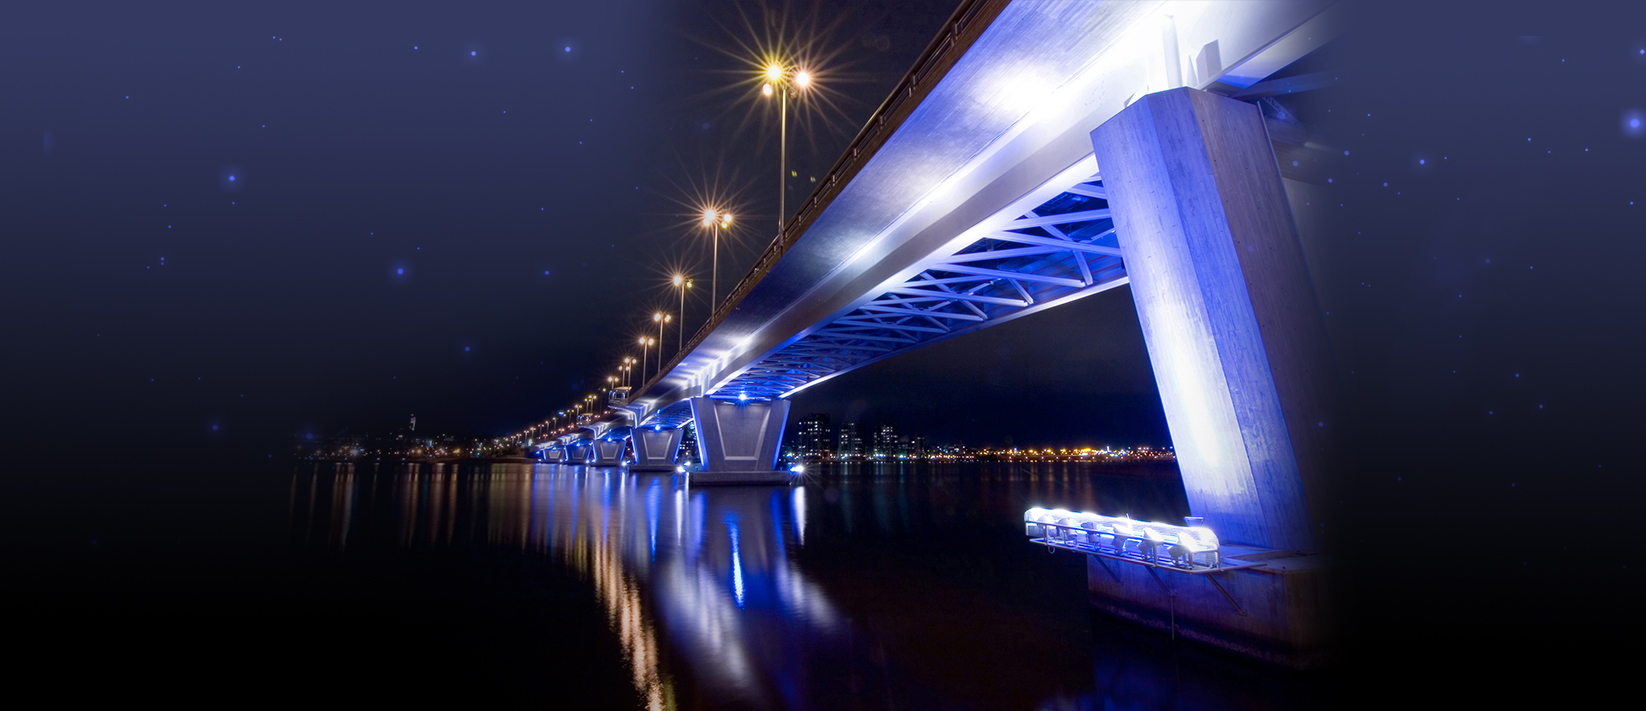 Художественная подсветка мостов